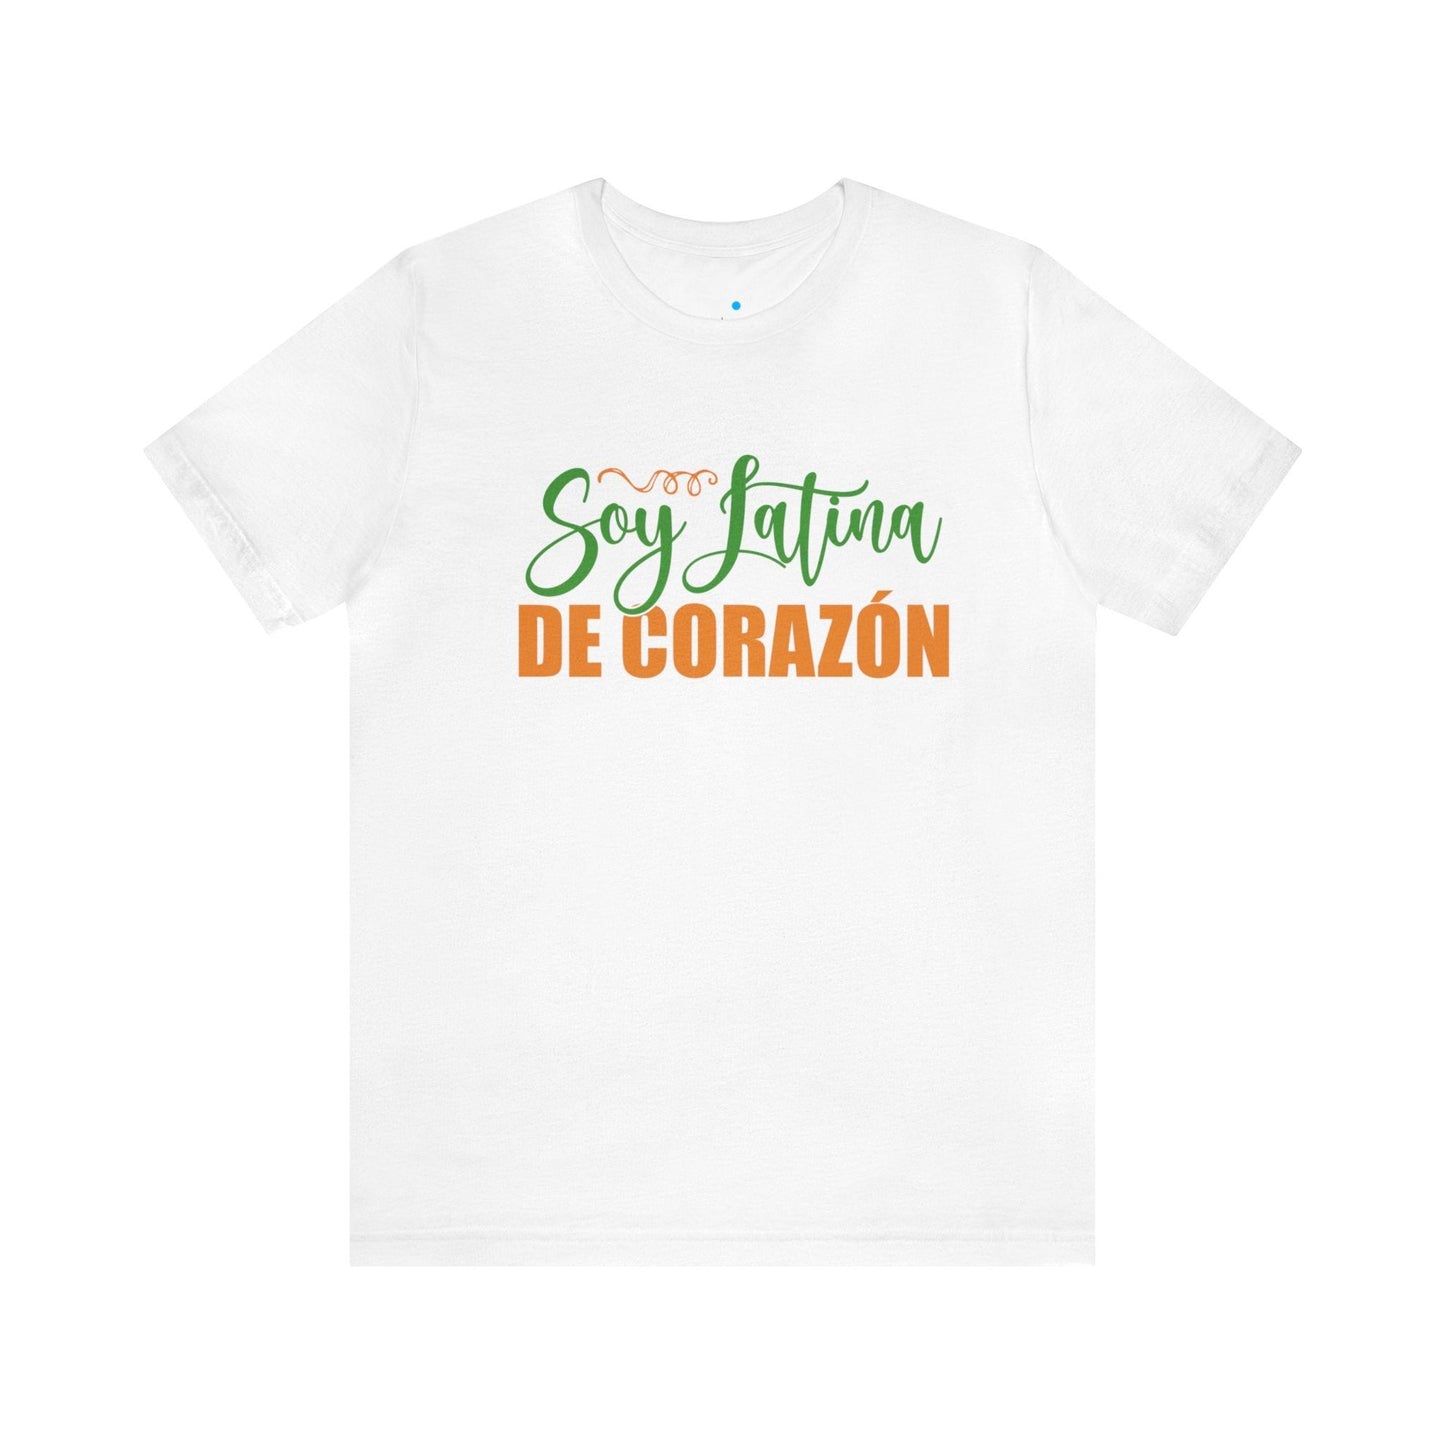 T-shirt - I am Latina at heart